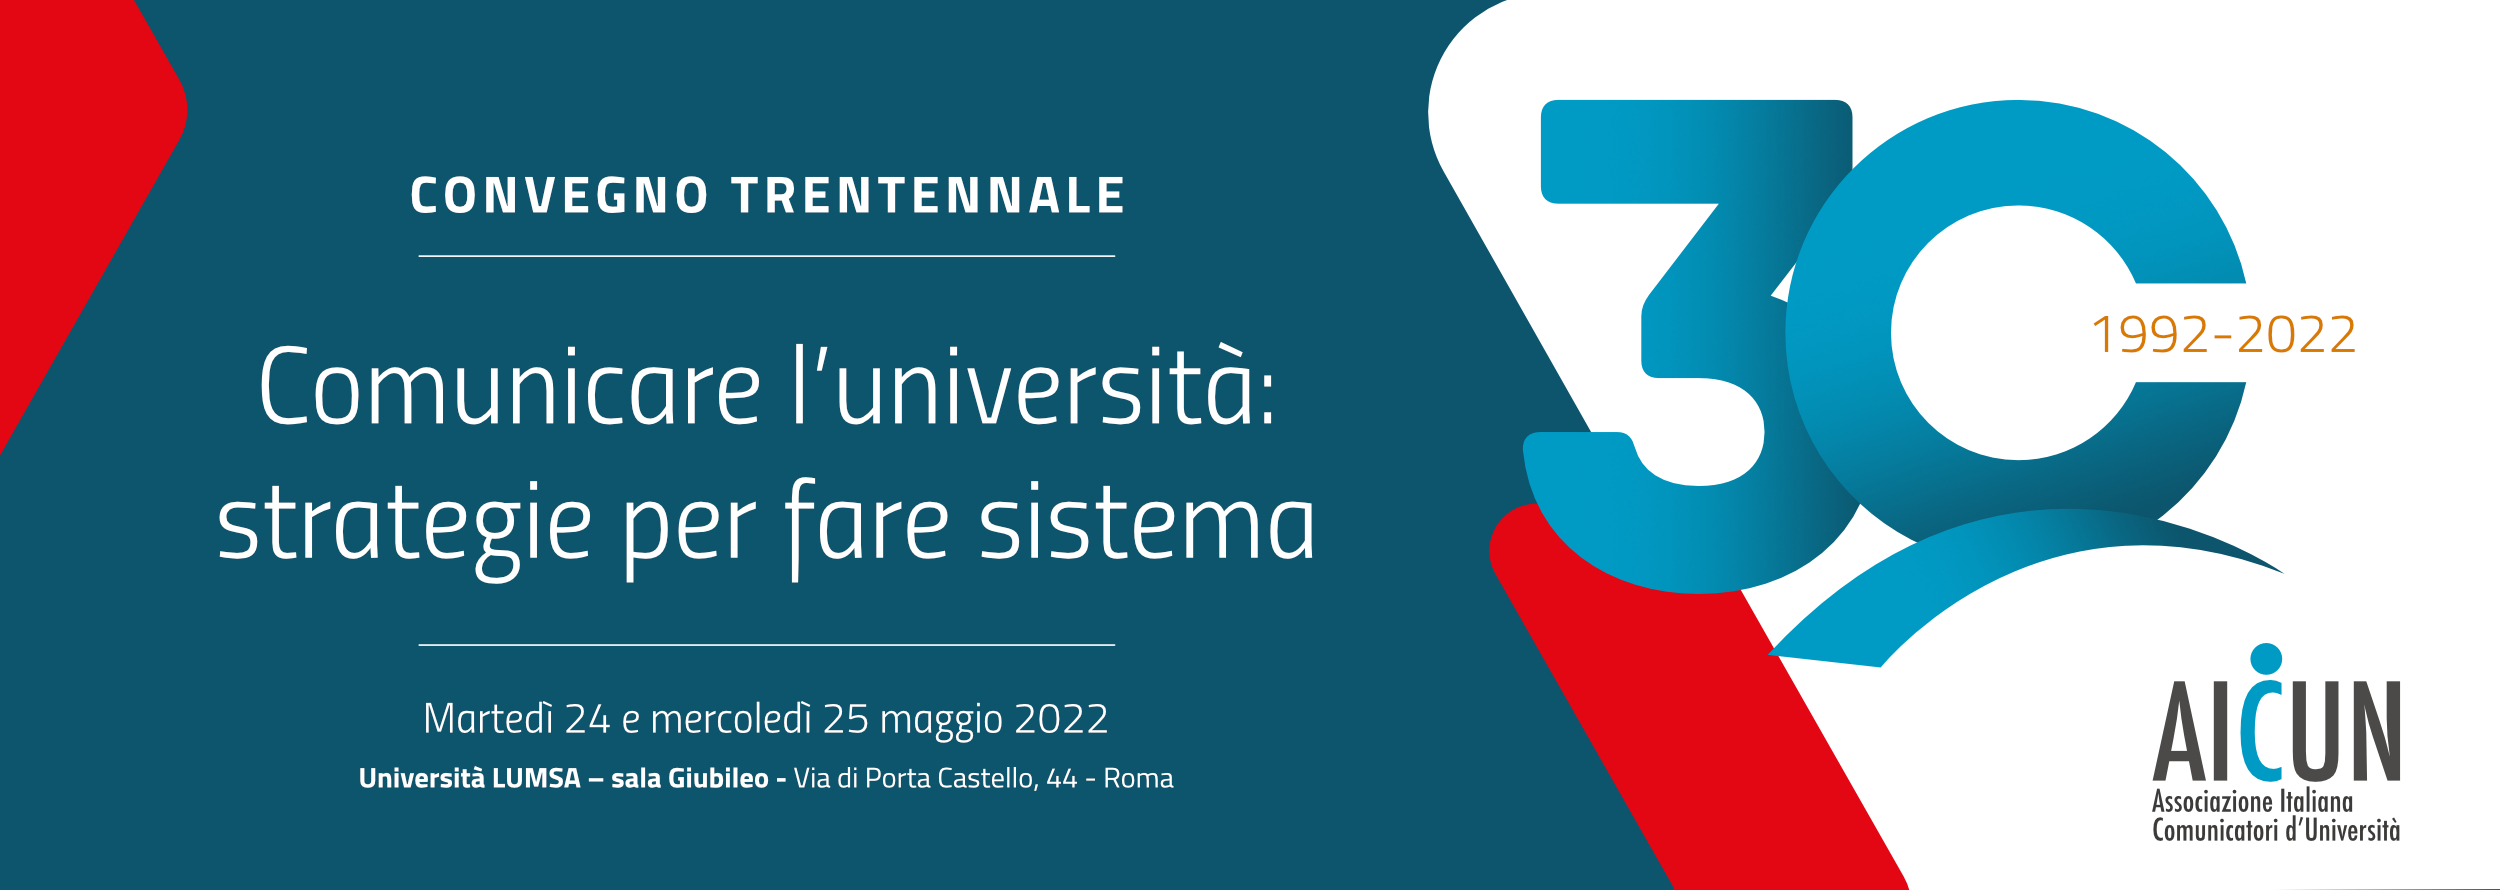 Comunicare l'università: strategie per fare sistema - Convegno per il Trentennale dell'Associazione Italiana dei Comunicatori di Università